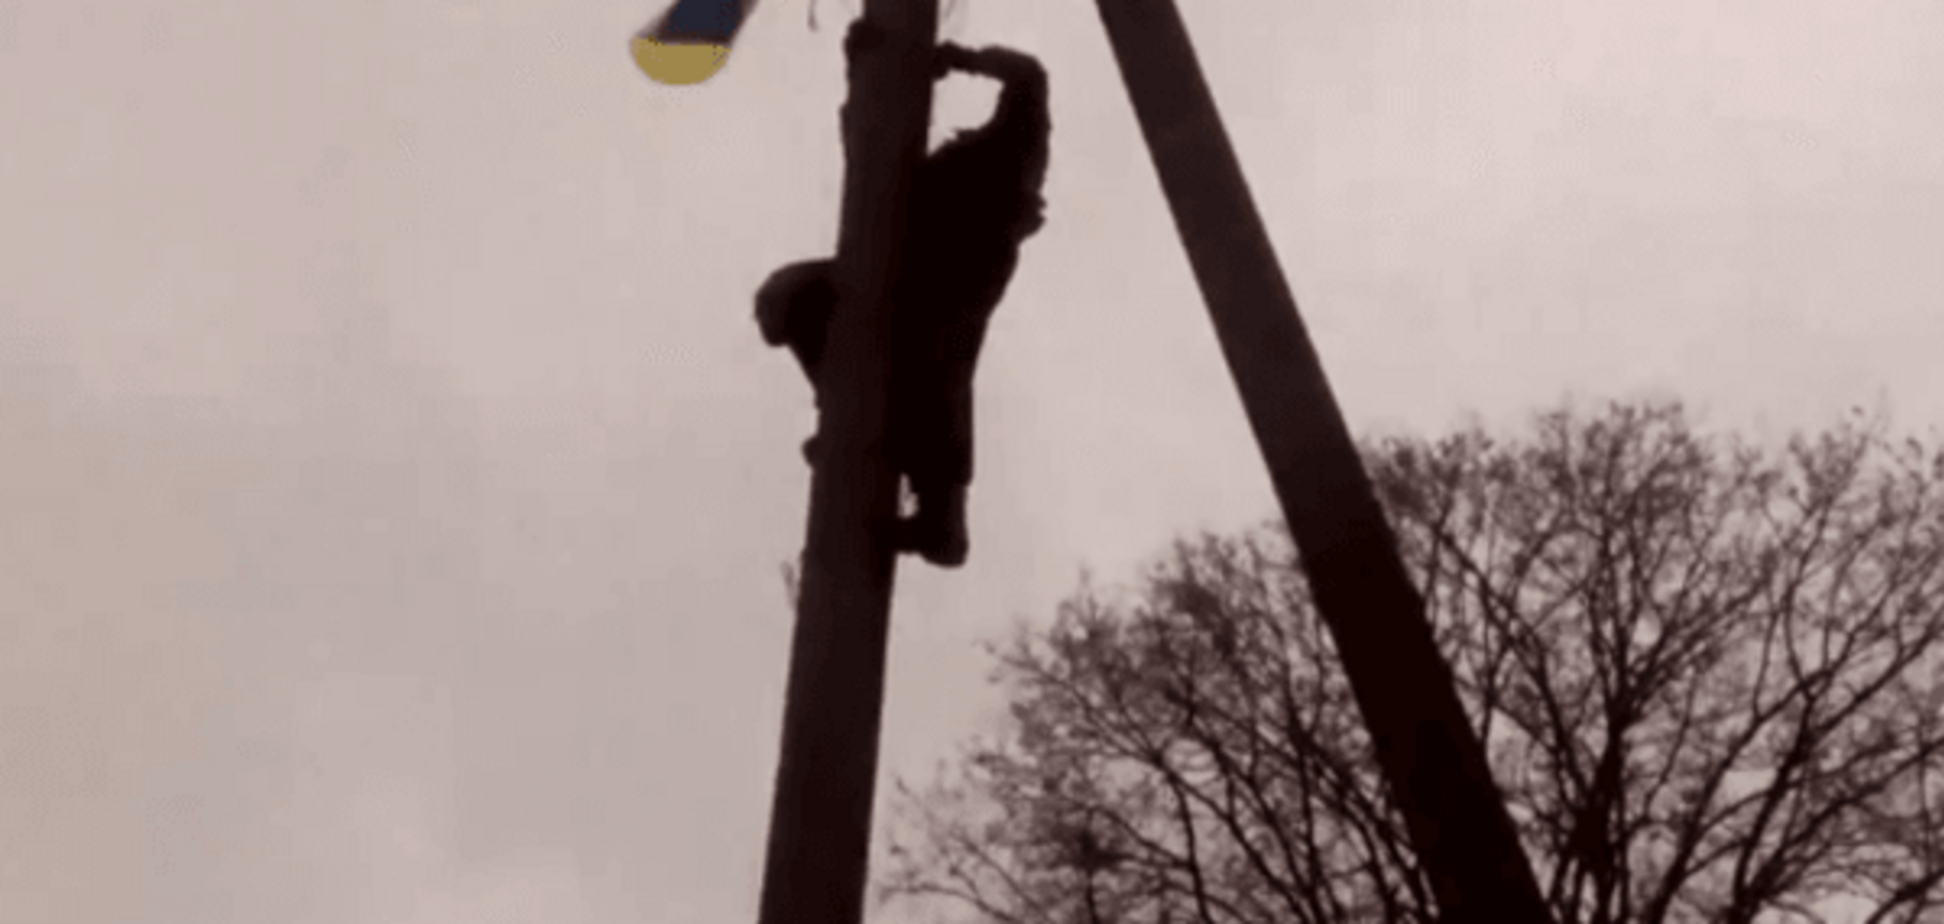 Враг, мы всегда рядом! Спецназ поднял флаг Украины в оккупированном Зайцево: видеофакт